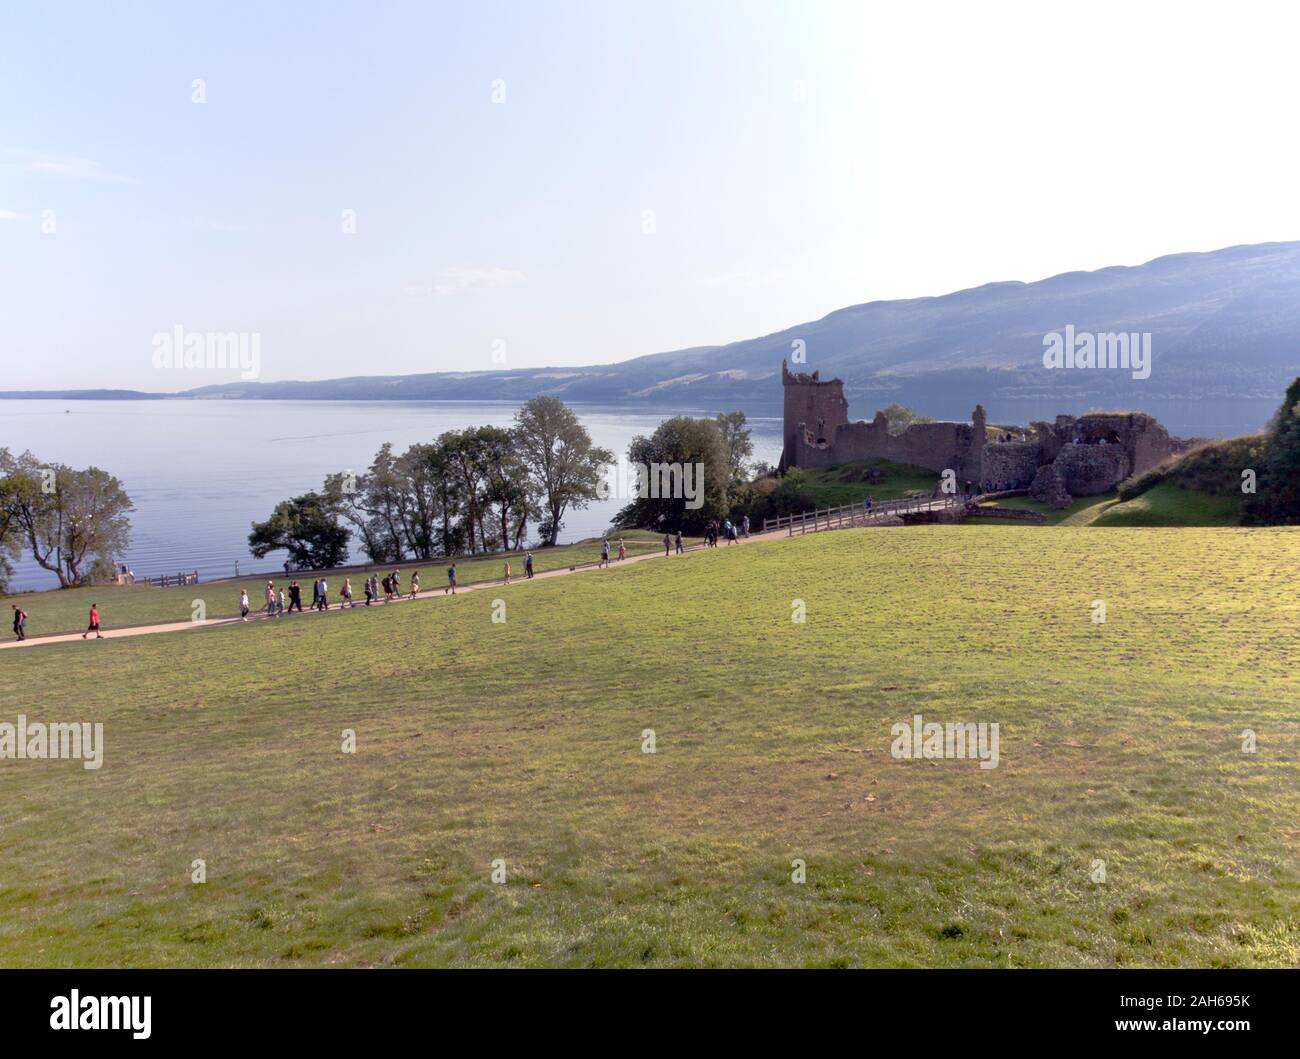 Con unos 1000 años de historia, las ruinas del castillo de Urquhart con vistas al lago Ness atraen ahora a cientos de turistas diariamente. Foto de stock